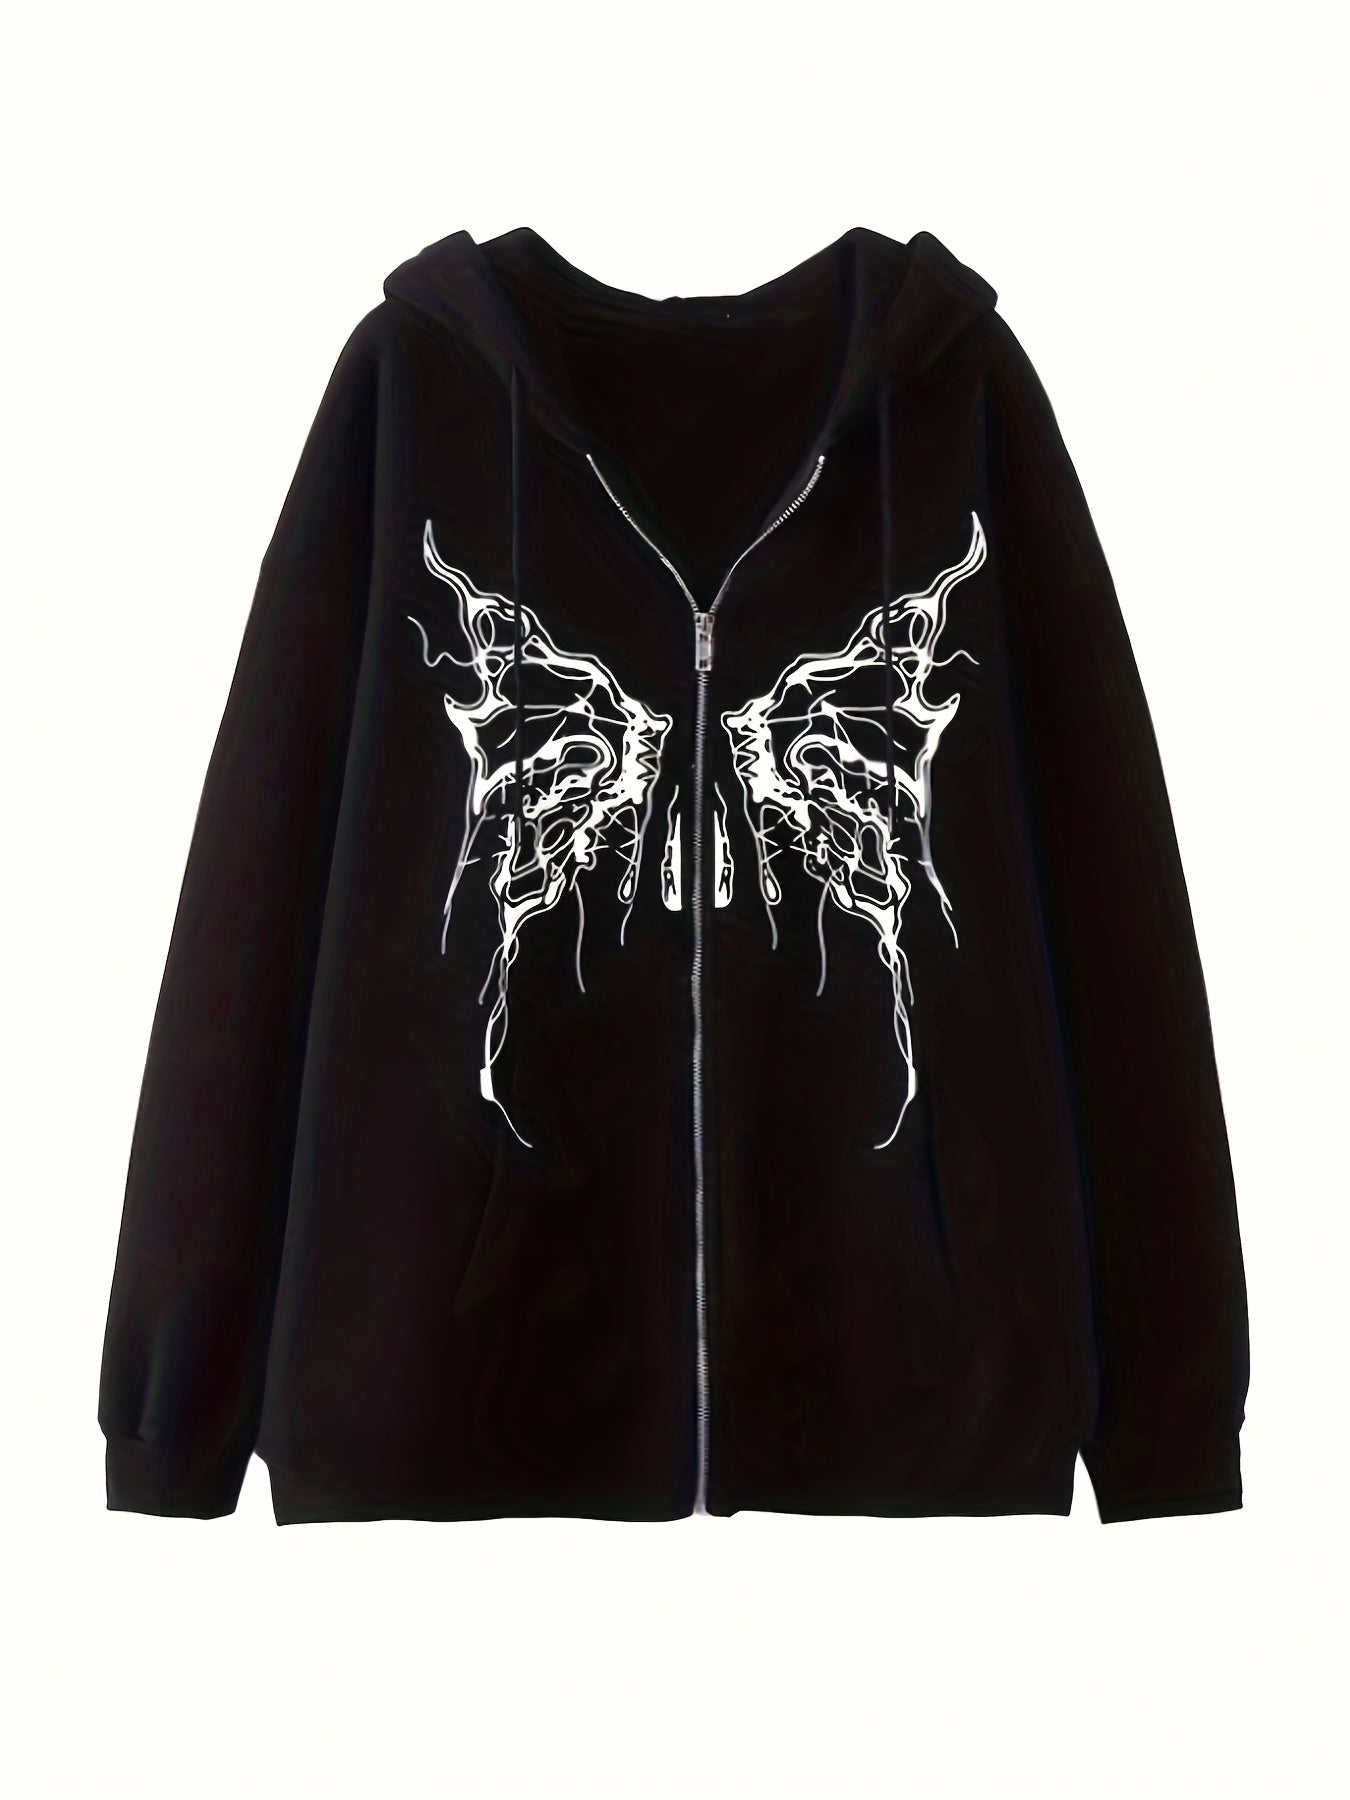 Grunge Butterfly Print Kangaroo Pocket Hoodie, Casual Long Sleeve Drawstring Hoodies Sweatshirt, Women's Clothing